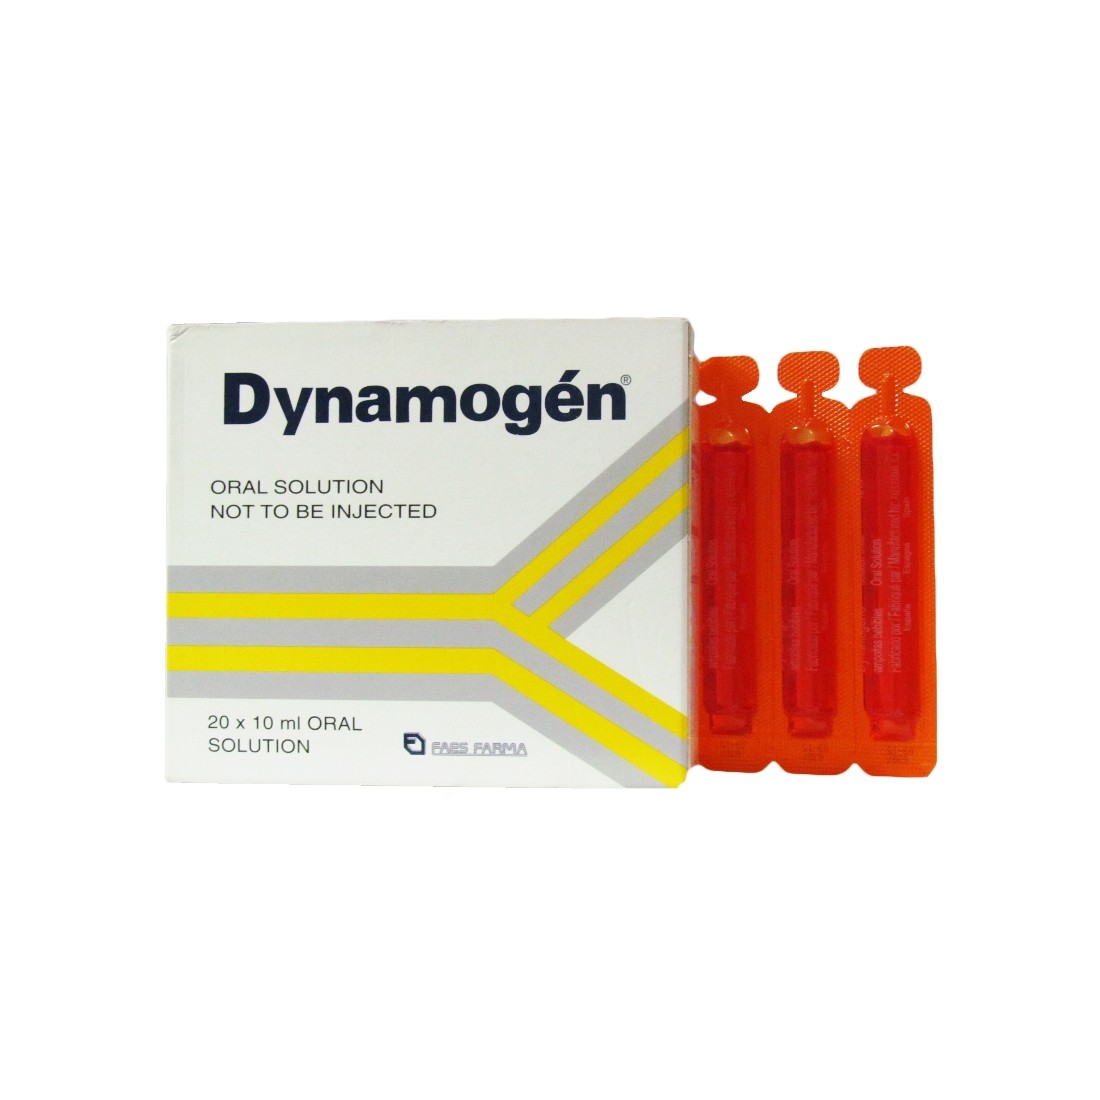 Dynamogen - image 0